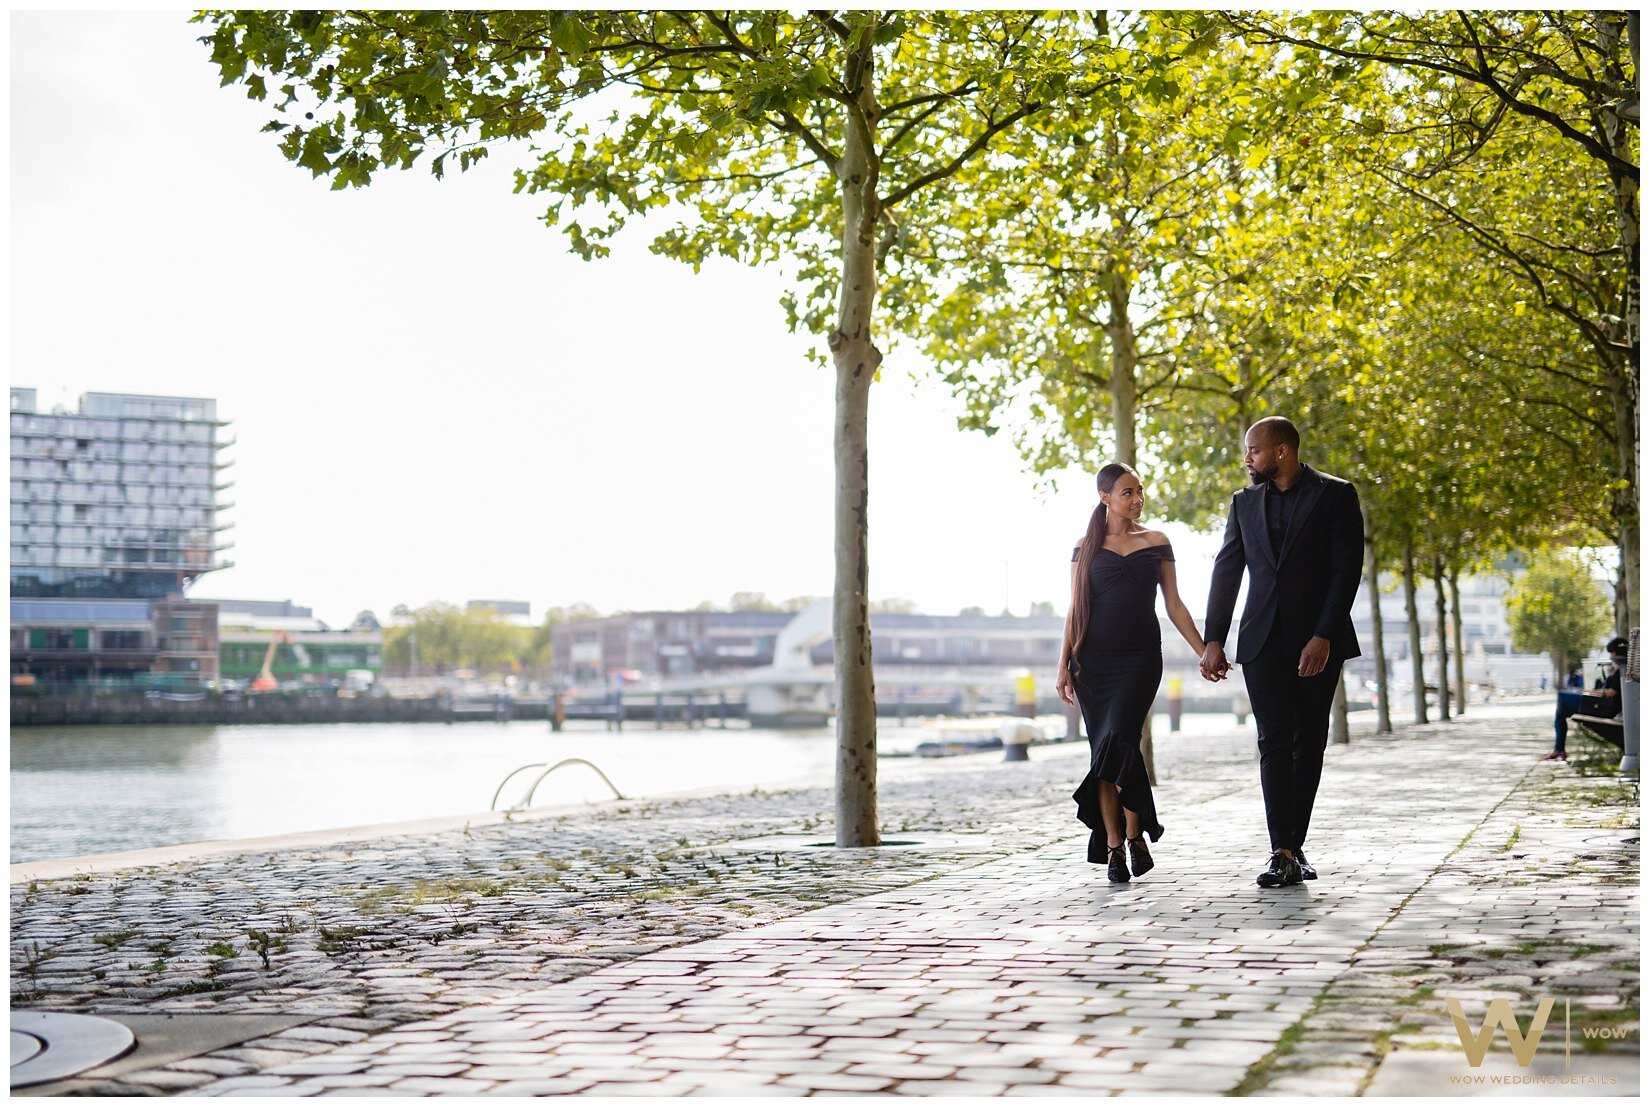 Genevieve & Gillio - Wow Wedding Details Photography @ Kop van Zuid Rotterdam Nederland_0005.jpg